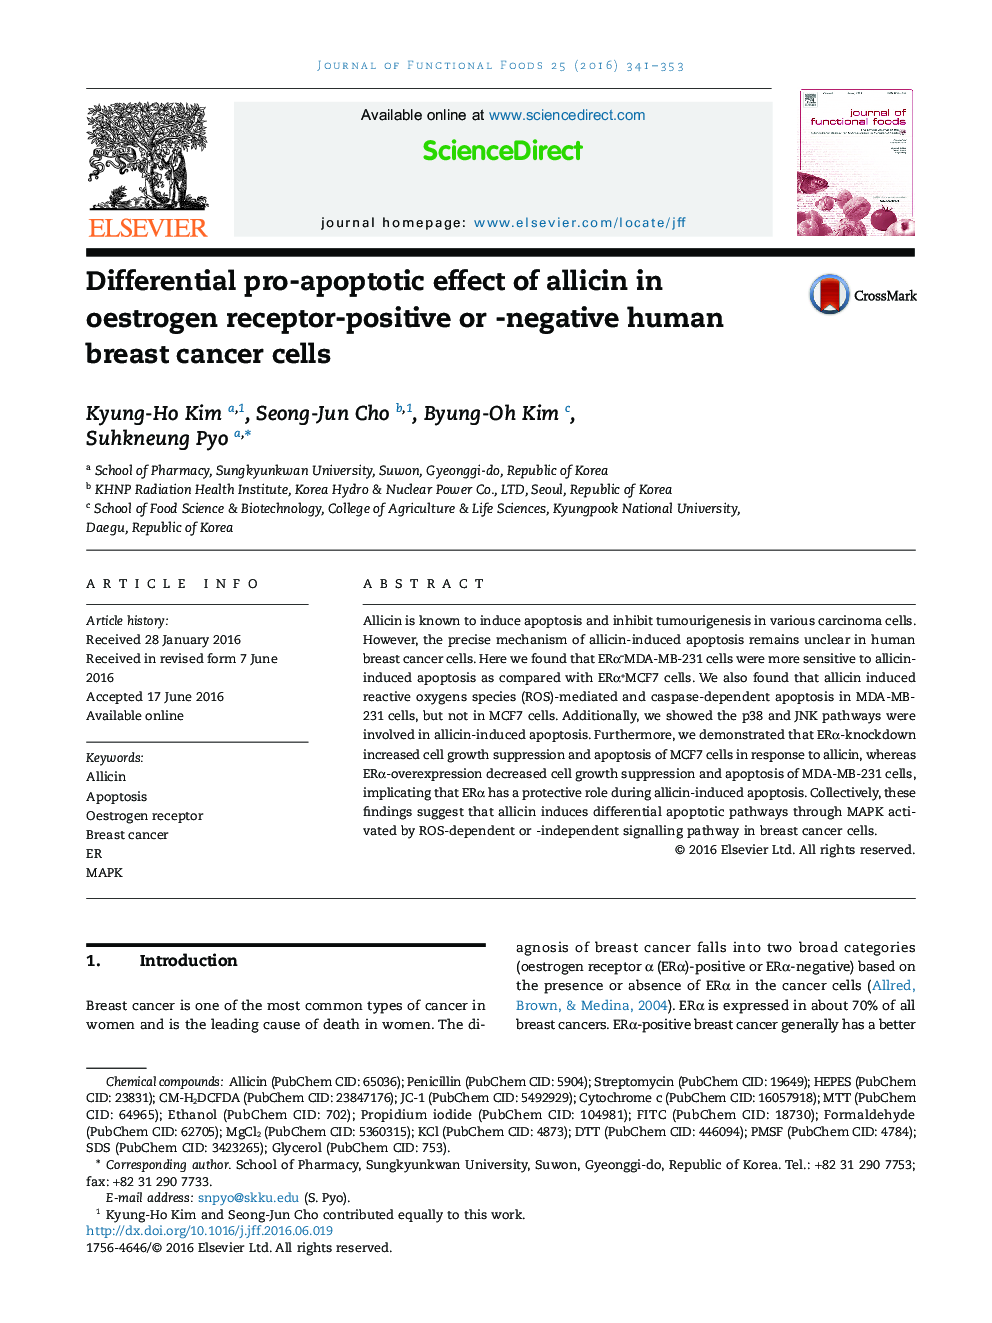 اثر متقابل پروپوپتوتیک آلیسین در سلولهای سرطان پستان انسانی مثبت یا ناسازگار گیرنده استروژن 